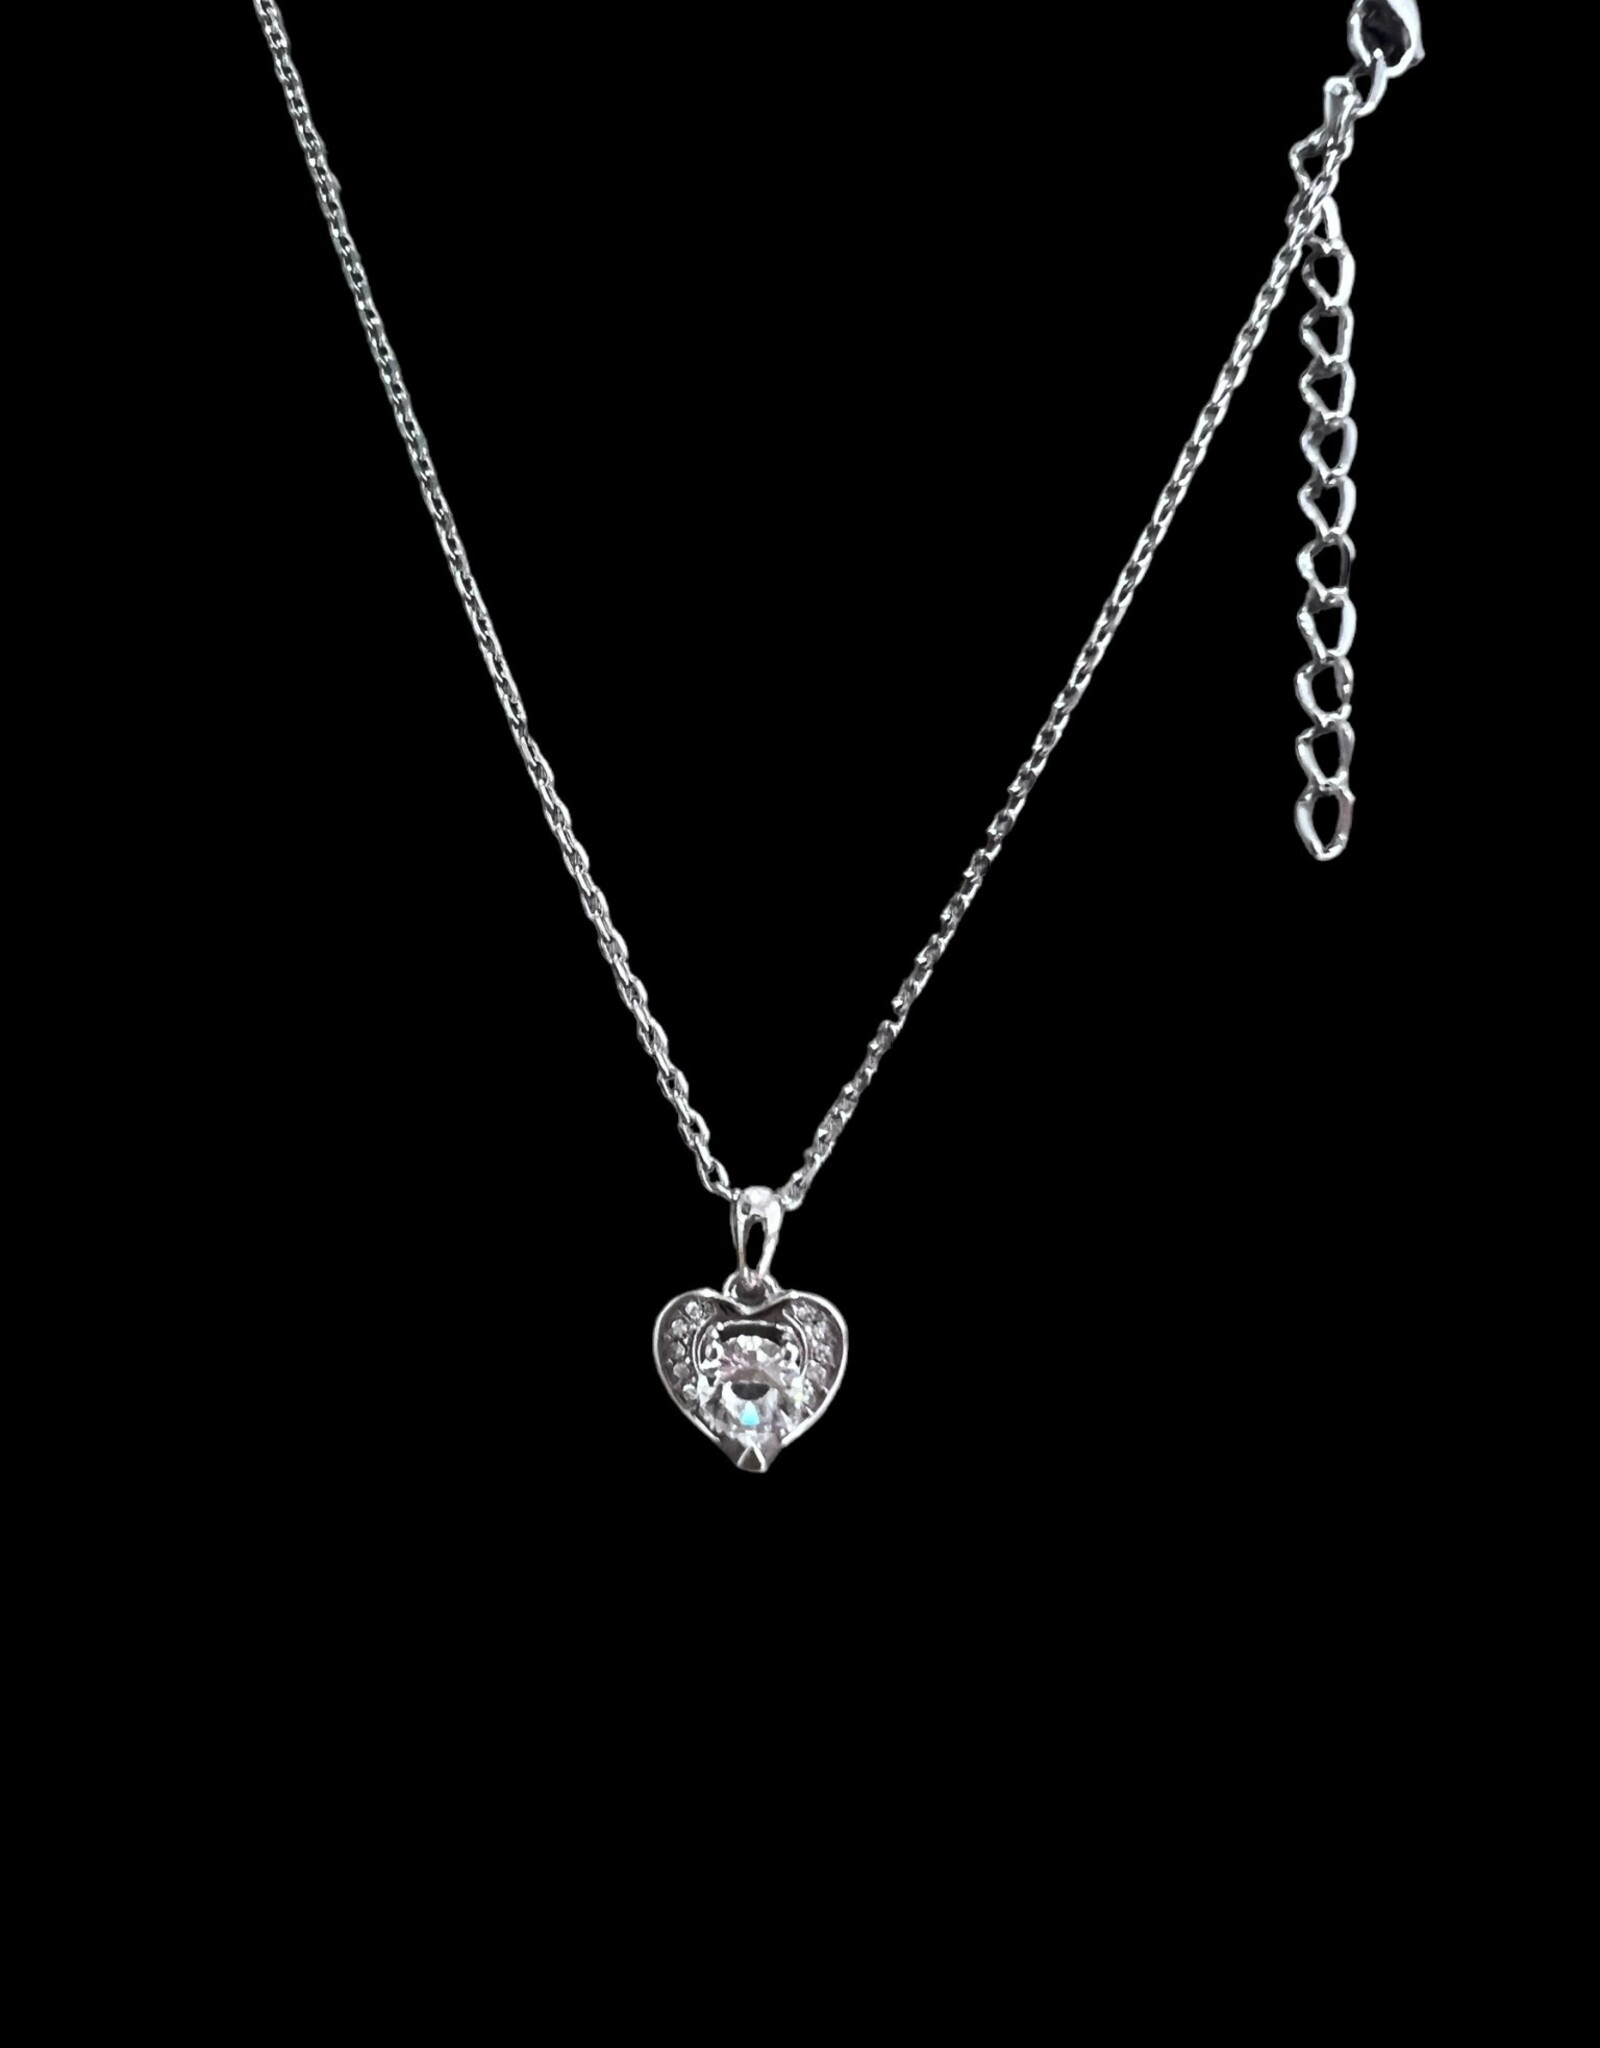 Finaella USA Fashion Jewelry Pendant Silver Plated Heart Austria Crystals